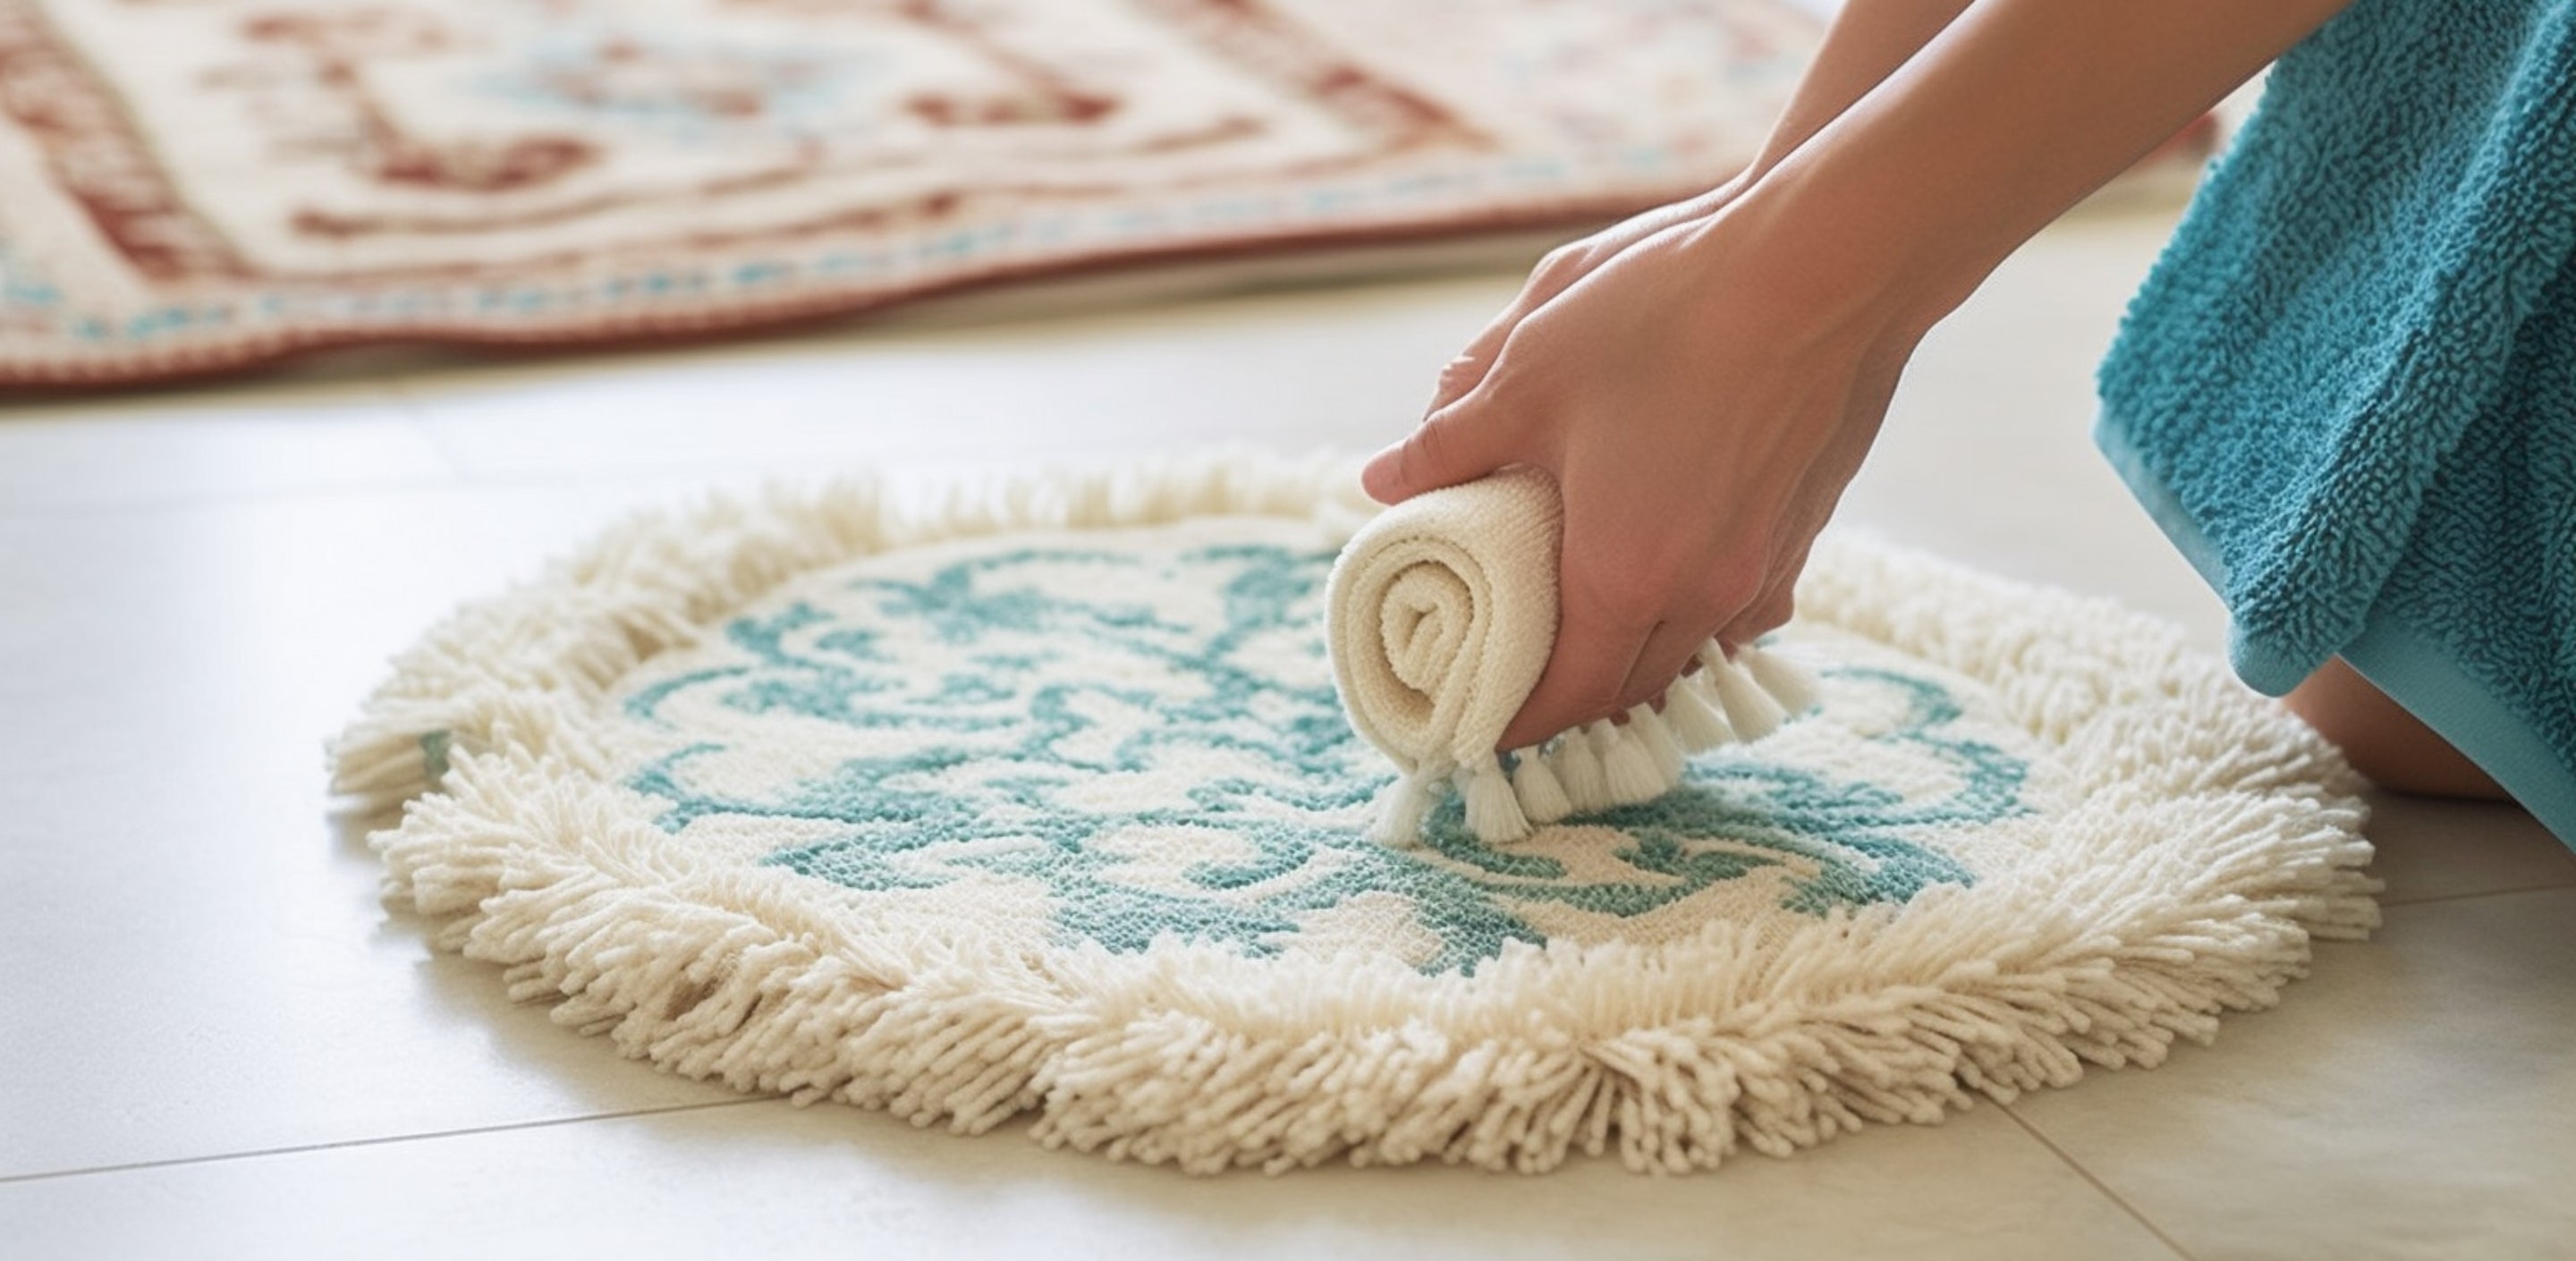 Nettoyage tapis : Les produits les plus efficaces pour nettoyer un tapis